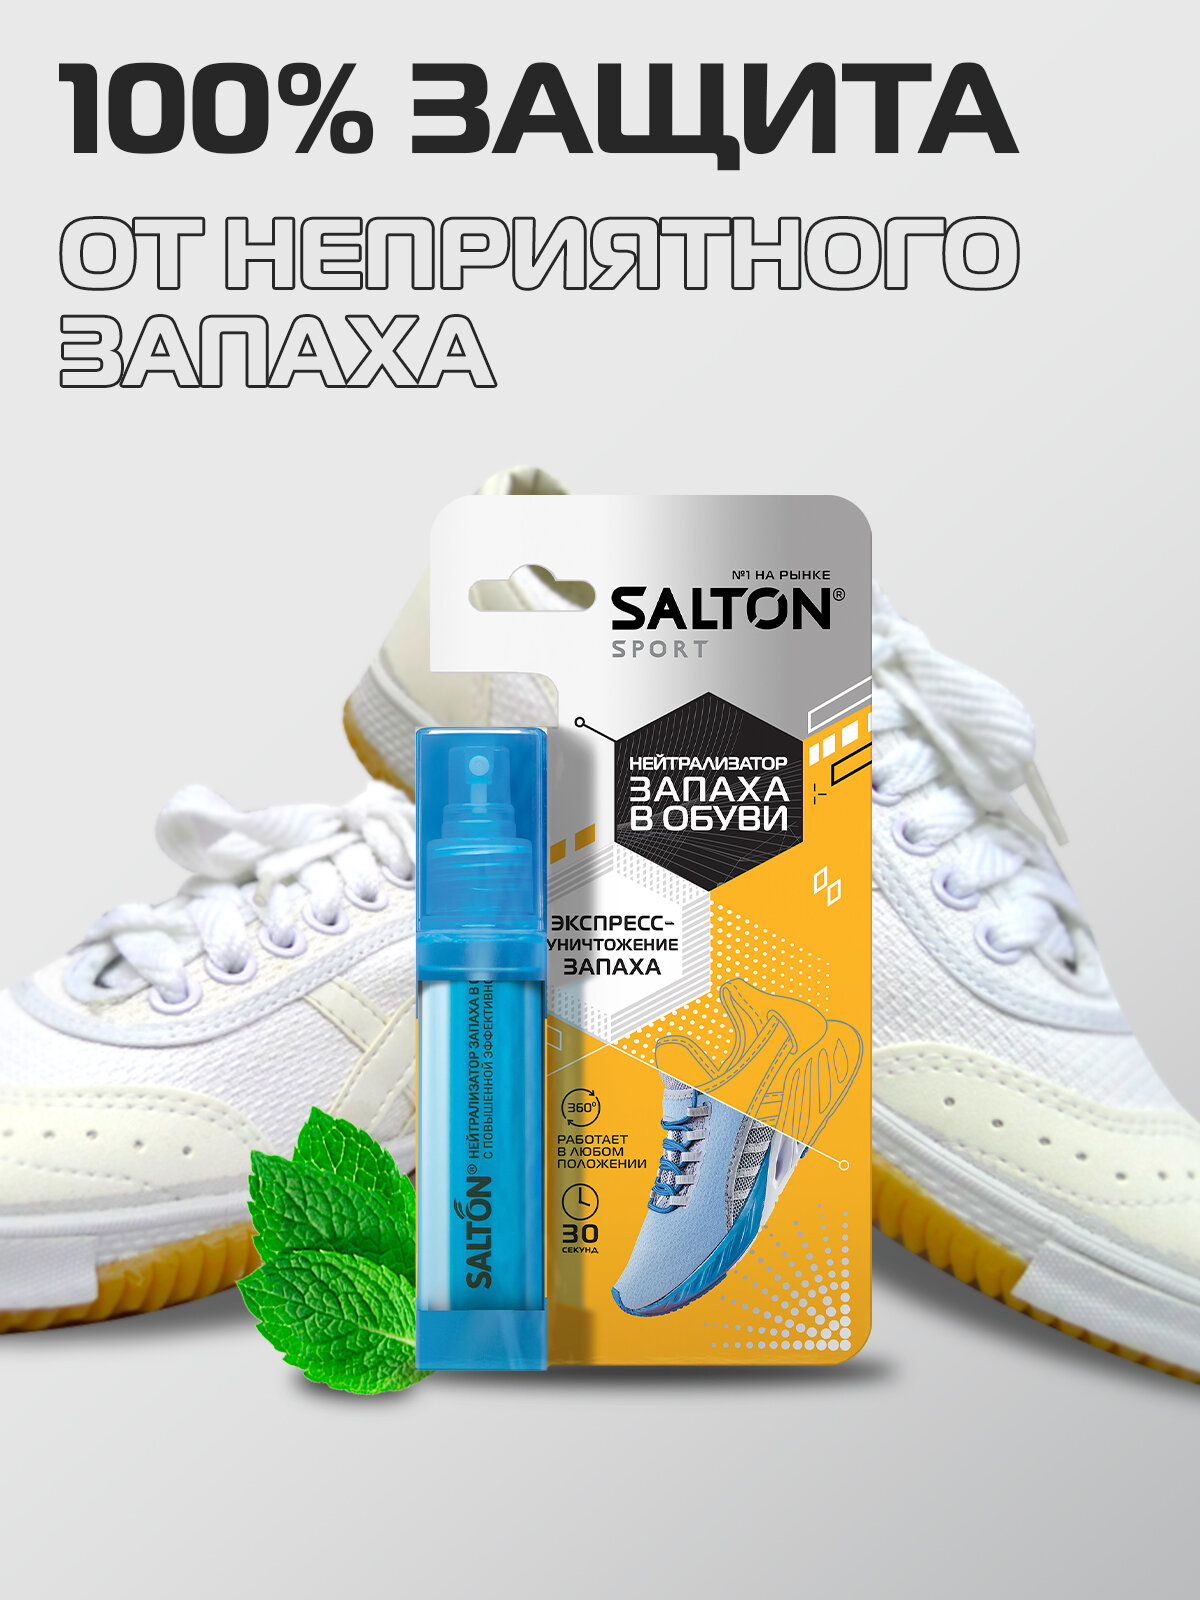 Нейтрализатор запаха в обуви Salton Sport, 75 мл - фото №8